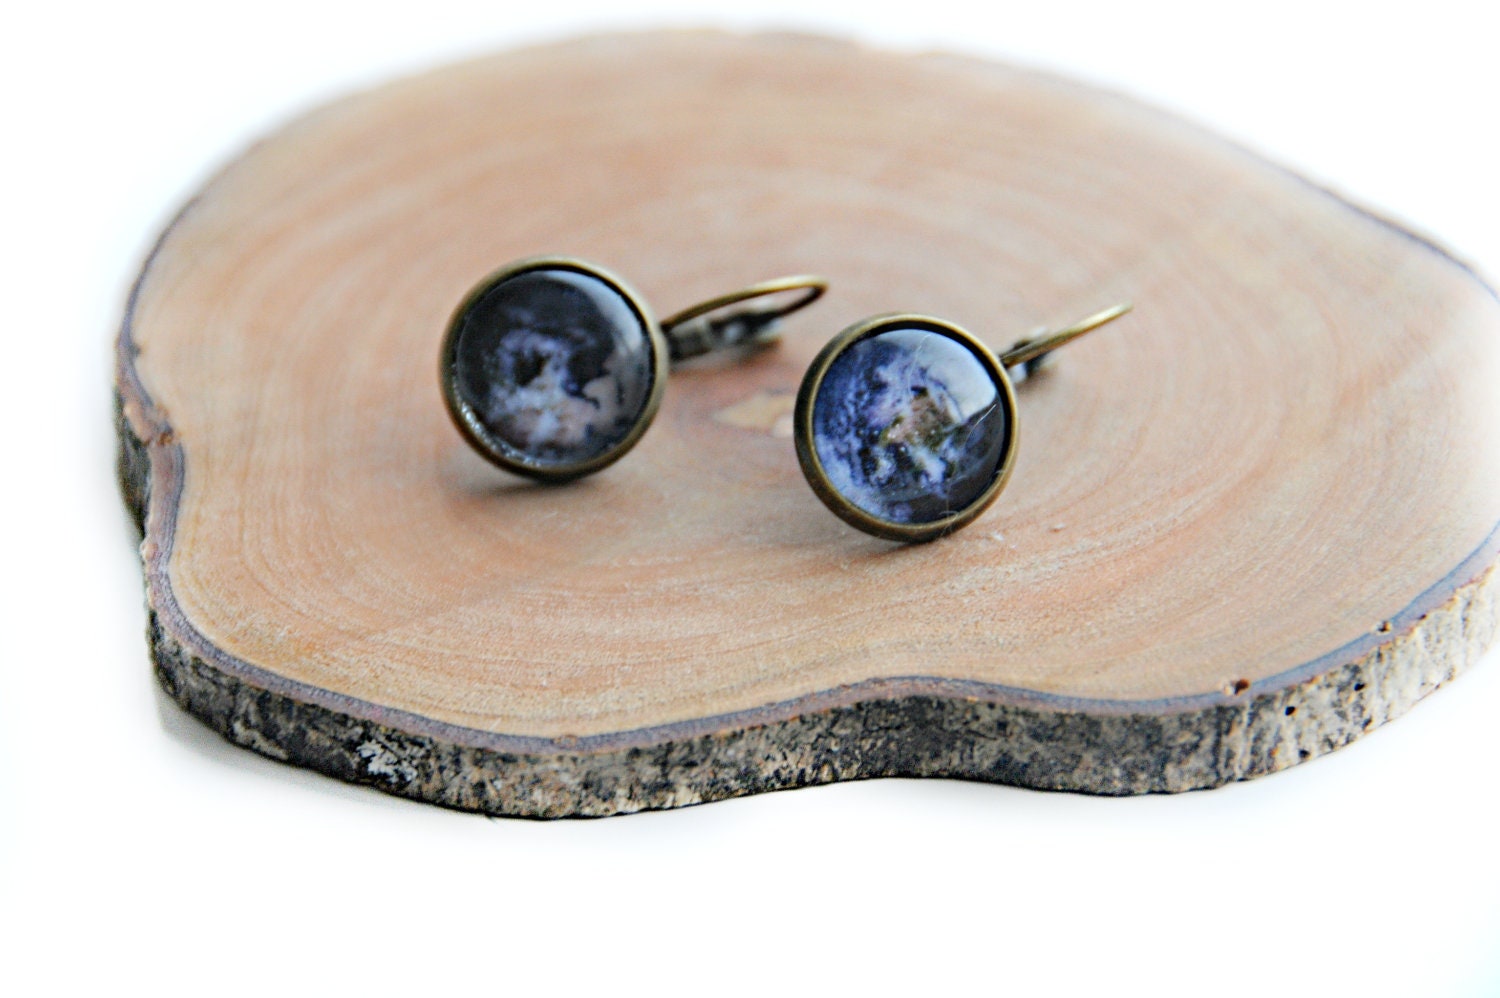 Earrings - handmade earrings in glass with planet earth